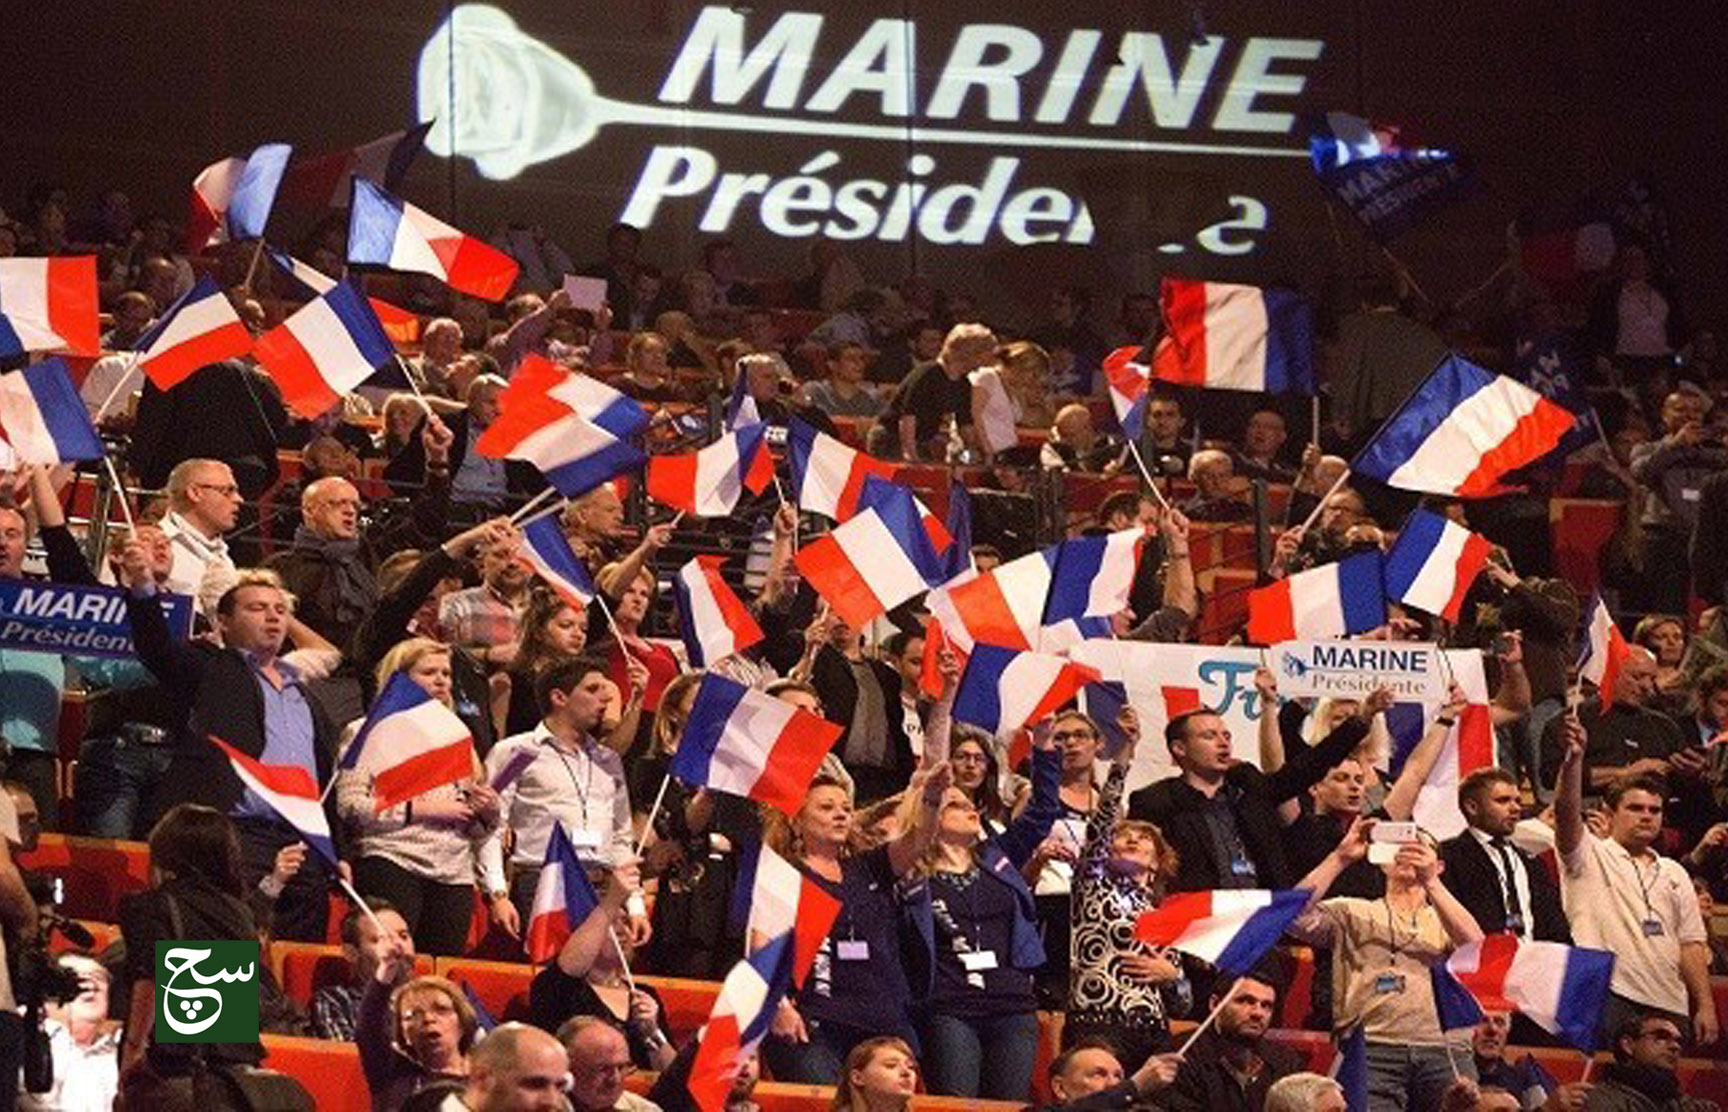 ارتفاع حظوظ لوبان بالفوز في الجولة الأولى للانتخابات الفرنسية